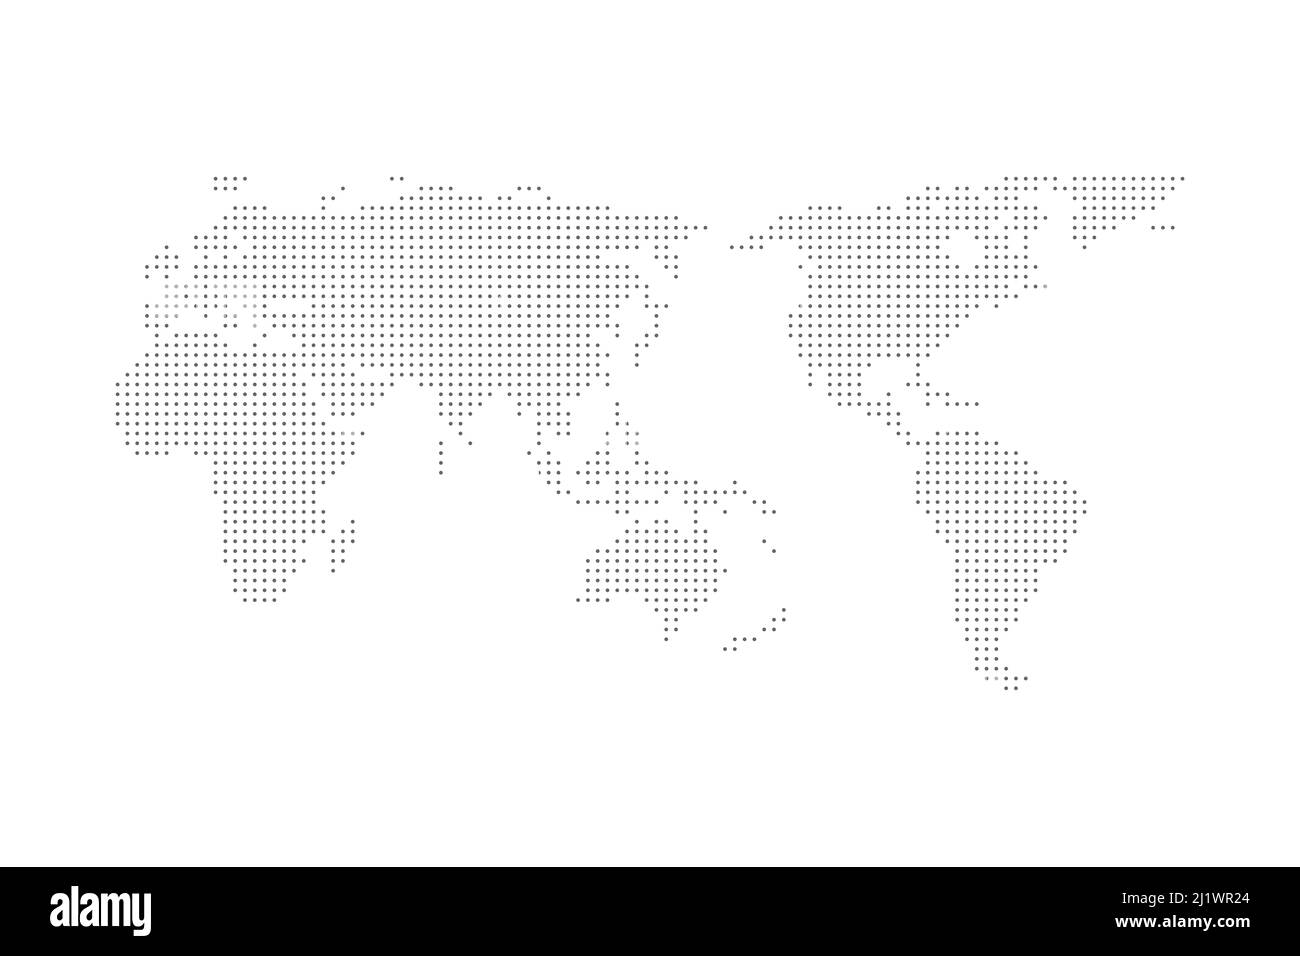 carte du monde en pointillés illustration de fond conception plate. Banque D'Images